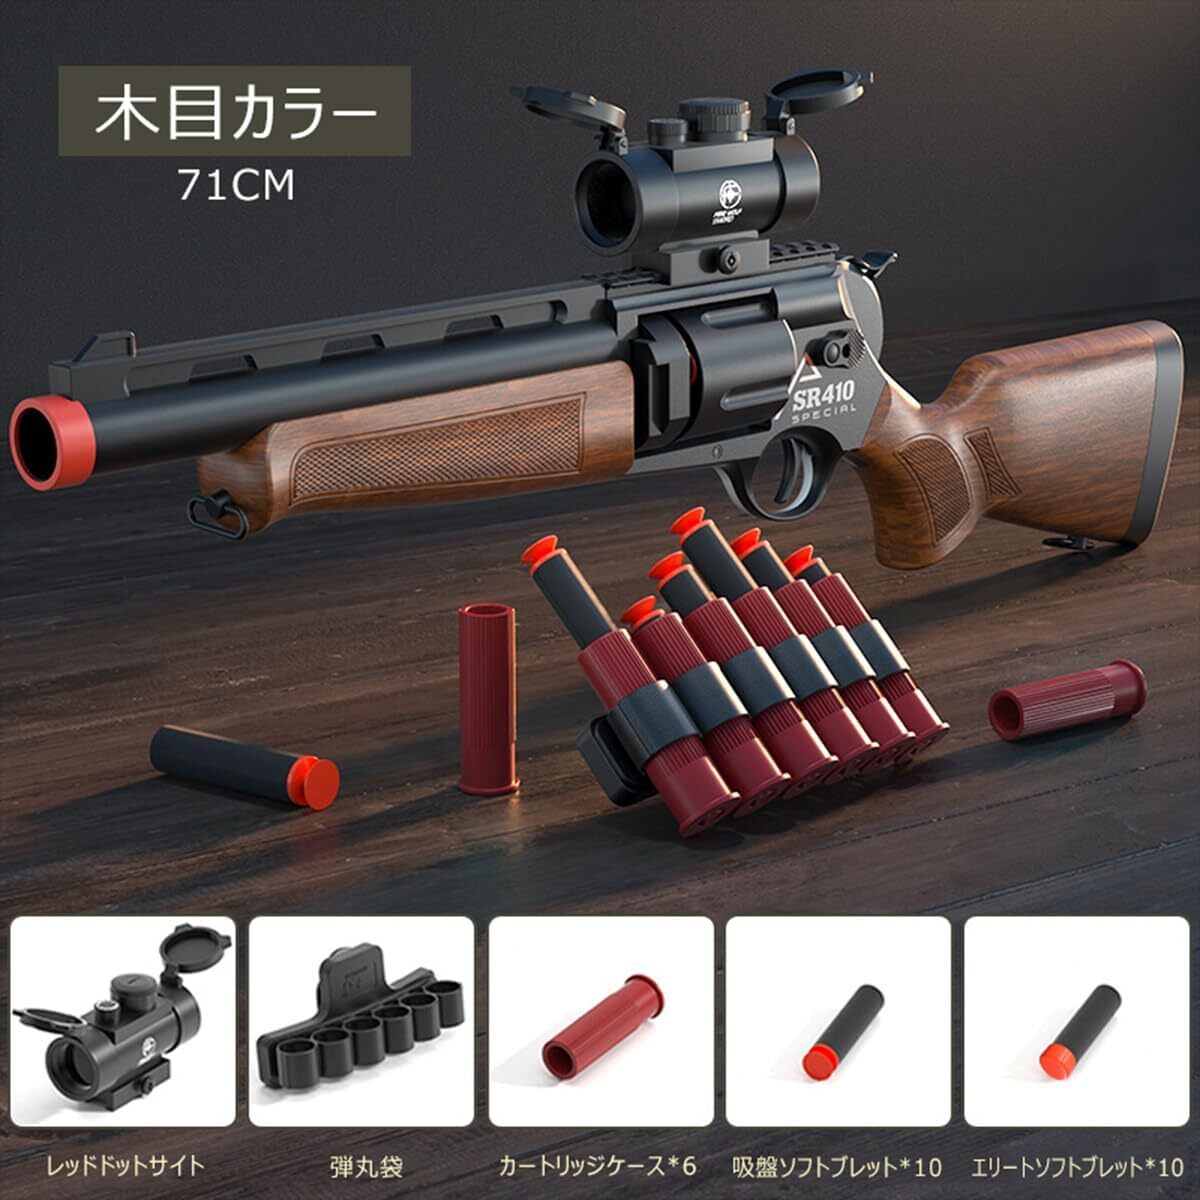 1円 おもちゃ銃 おもちゃの銃 SR410 排莢式 ショットガン トイガン モデルガン スポンジ銃 スポンジ弾 (木目)の画像1